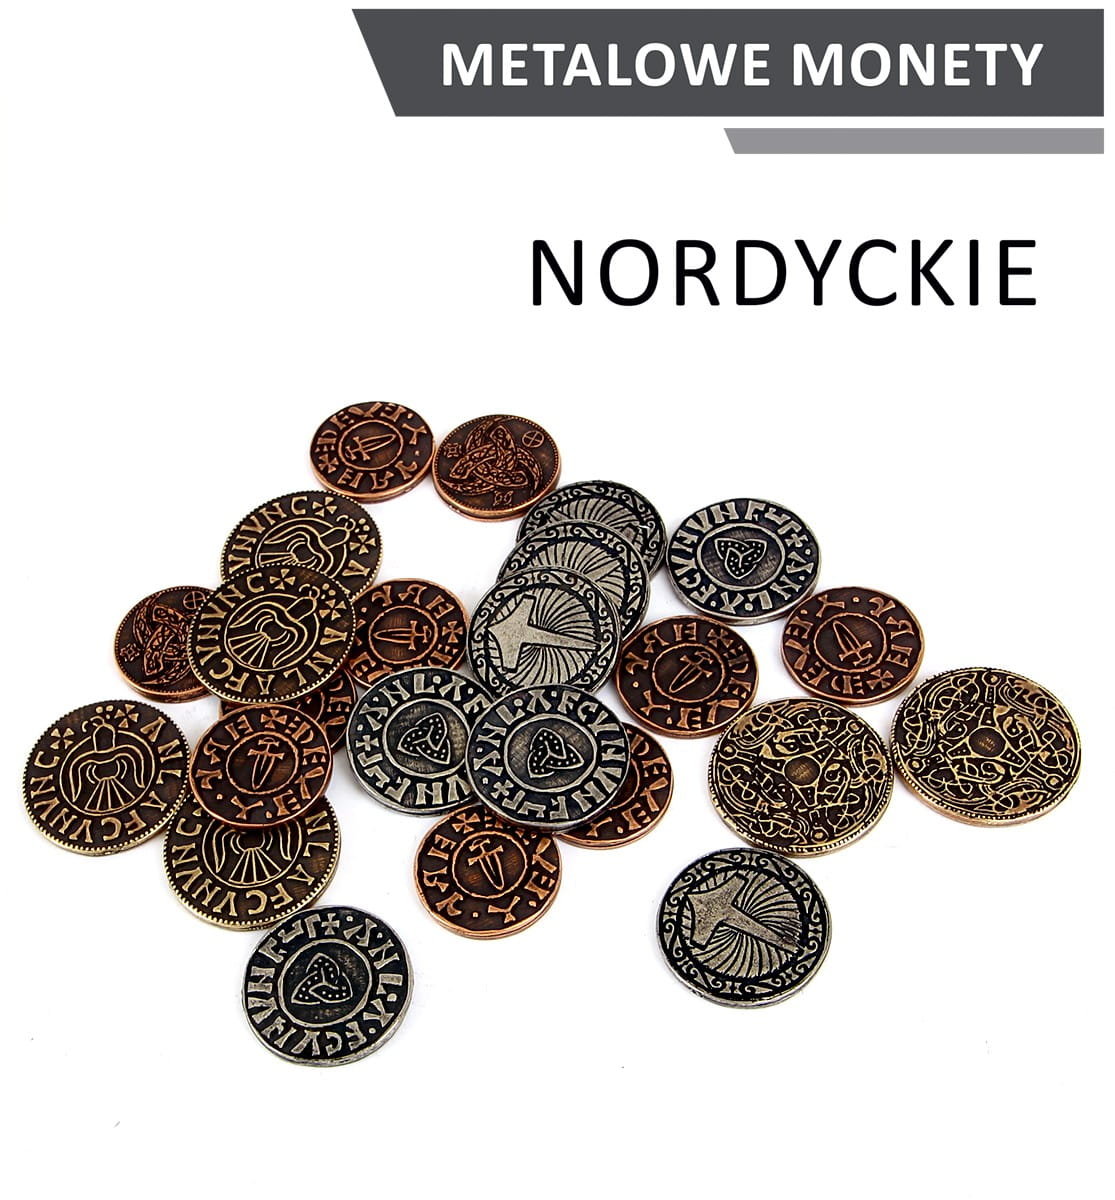 Фото - Настільна гра Drawlab Entertainment, Metalowe monety - nordyckie, 24 szt.